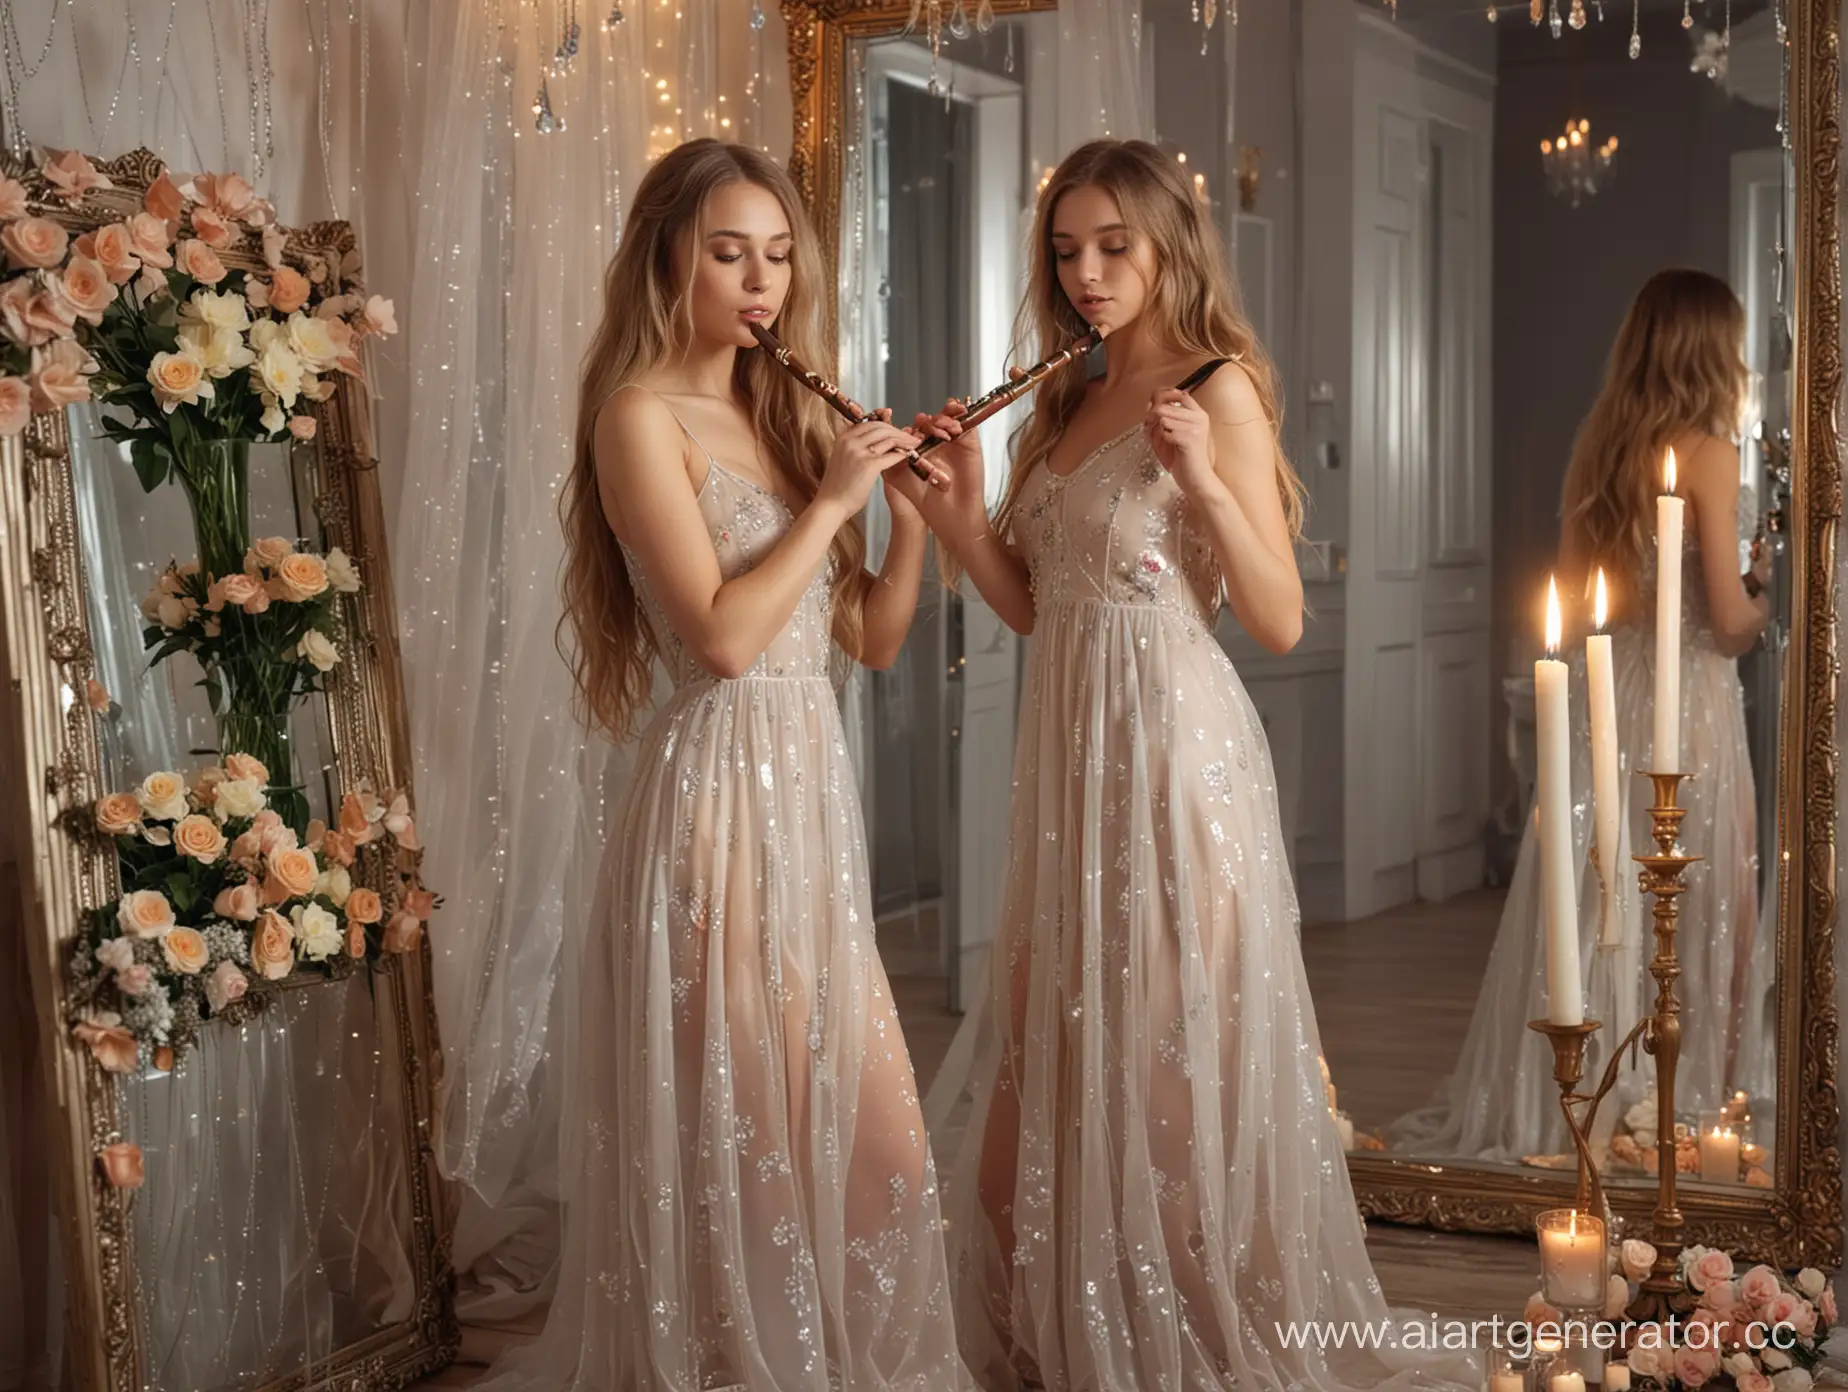 Цветочная комната с зеркалами, свечи, Молодая сексуальная Русская девушка играет на флейте, Бальное полупрозрачное платье, волнистые длинные волосы.